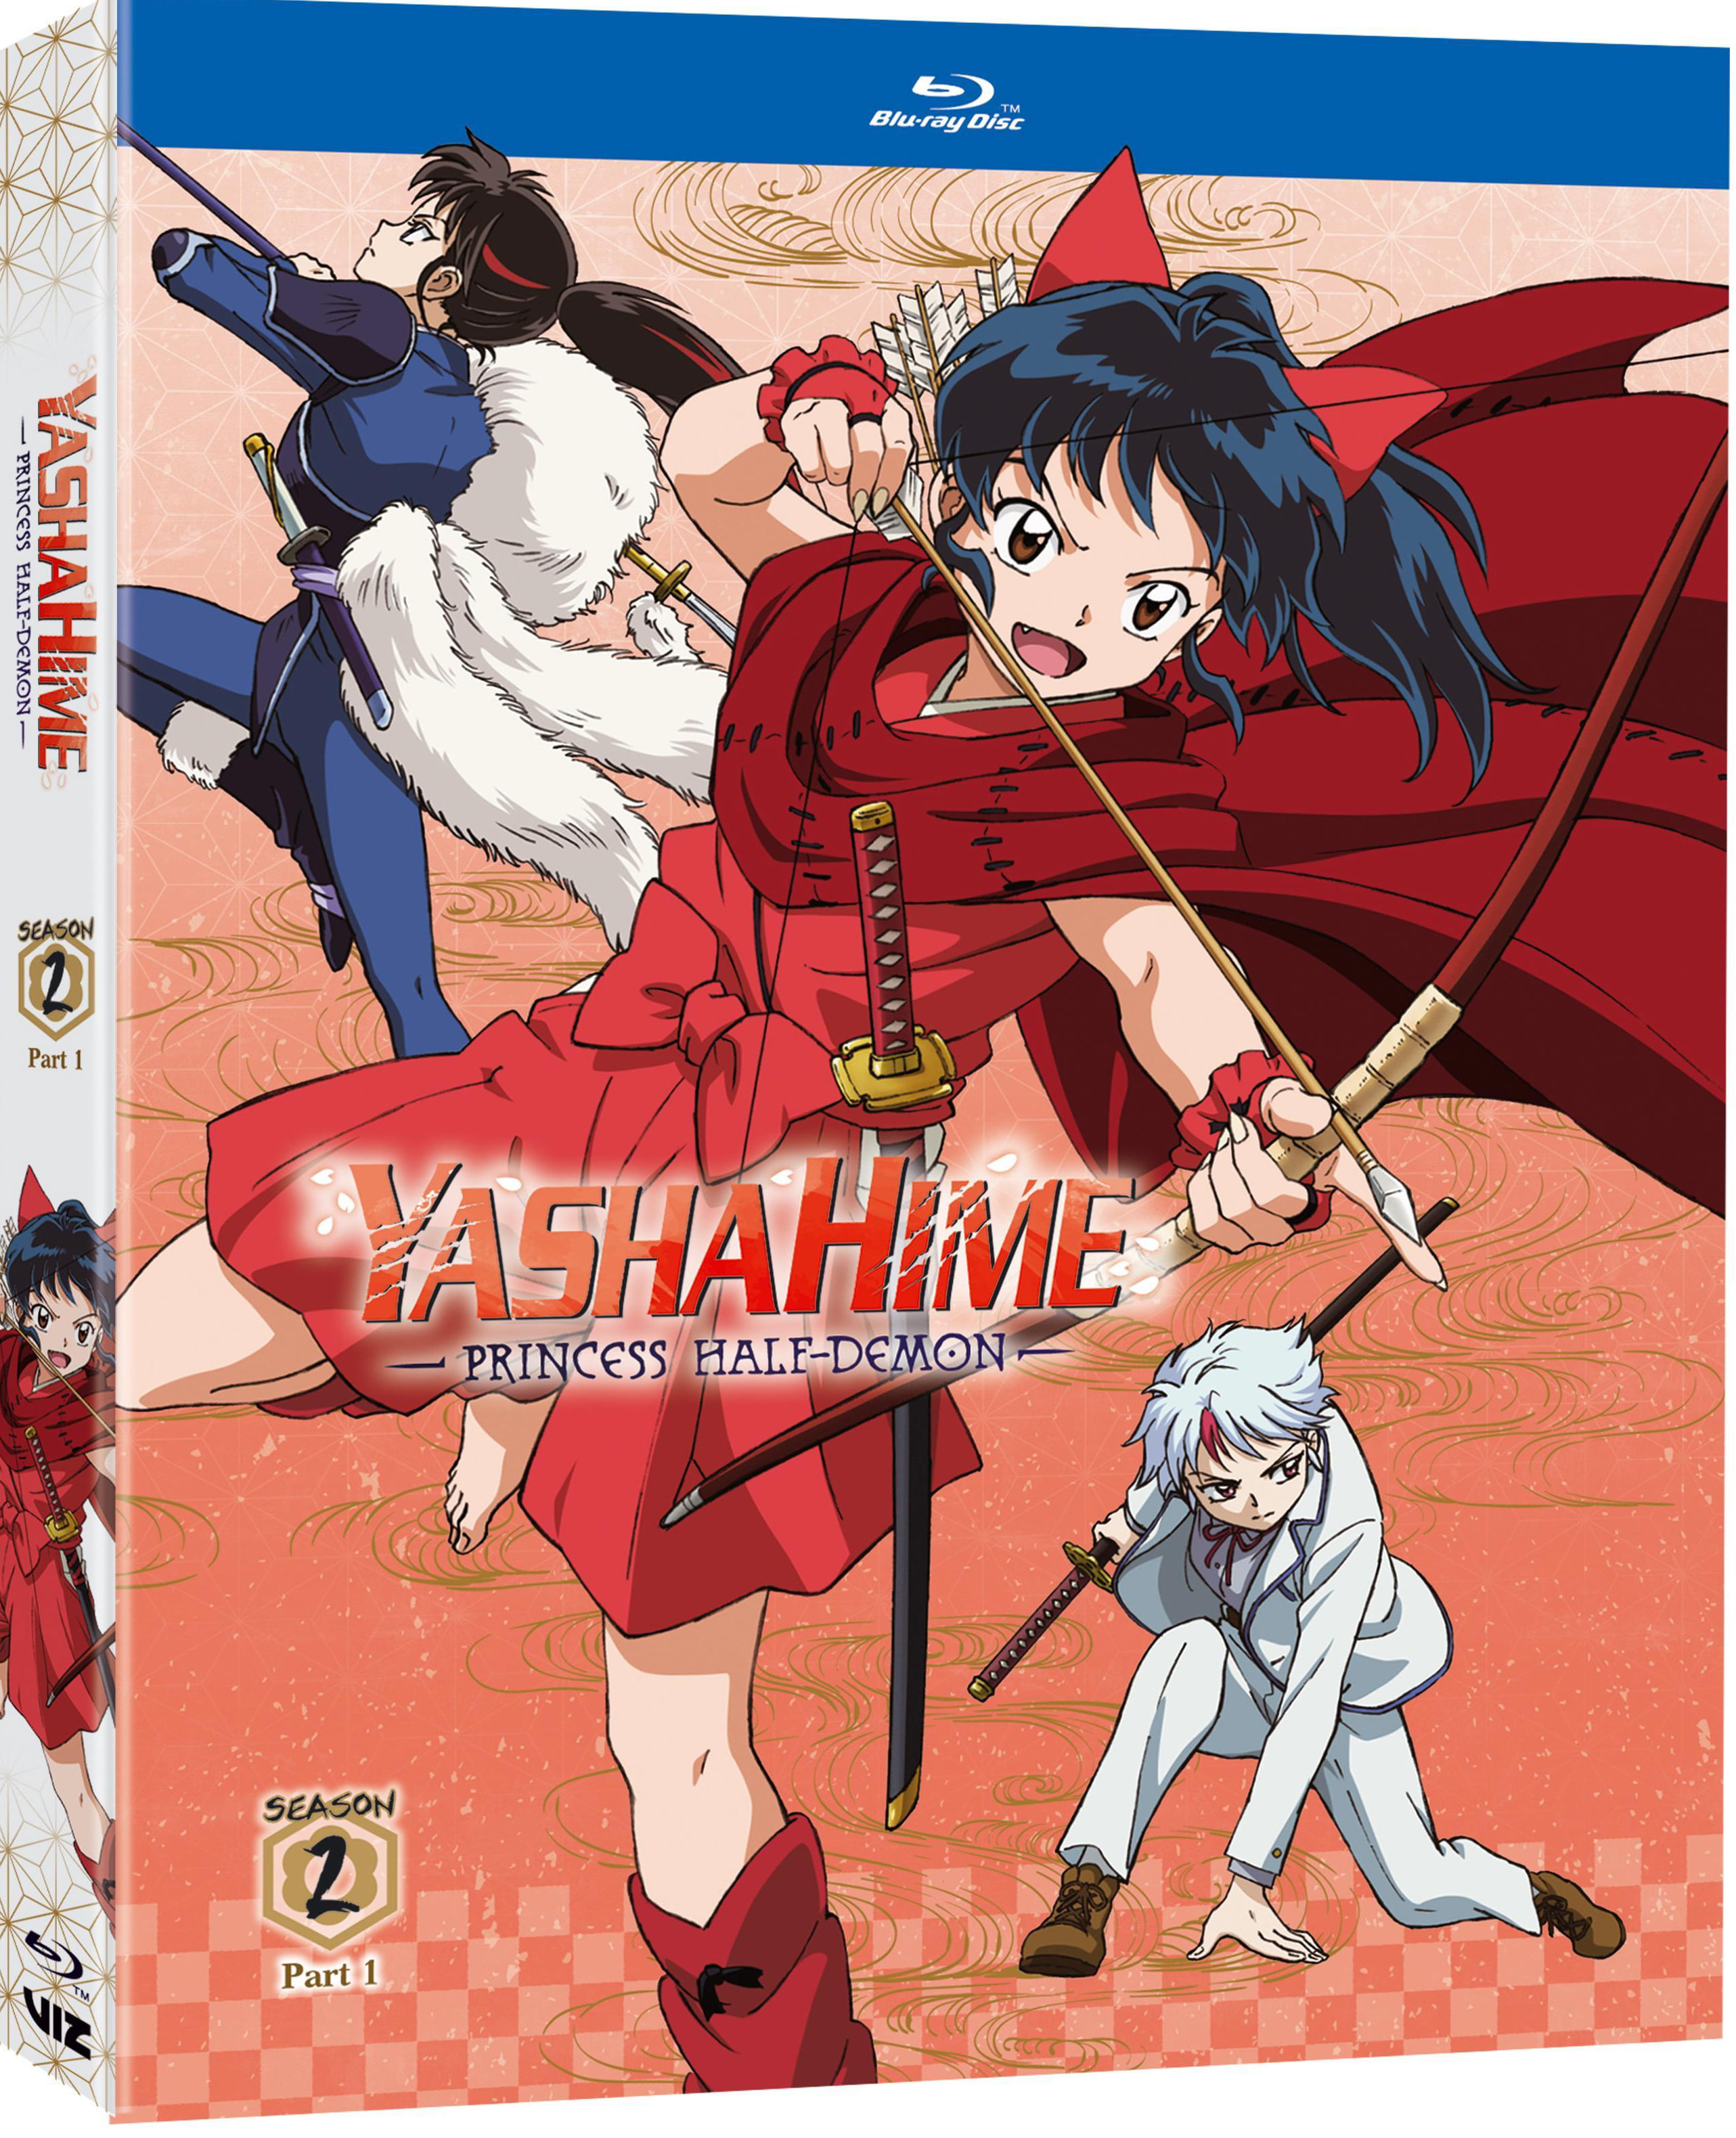 Hanyou No Yashahime: Yashahime: Princess Half-Demon,Matte Cover